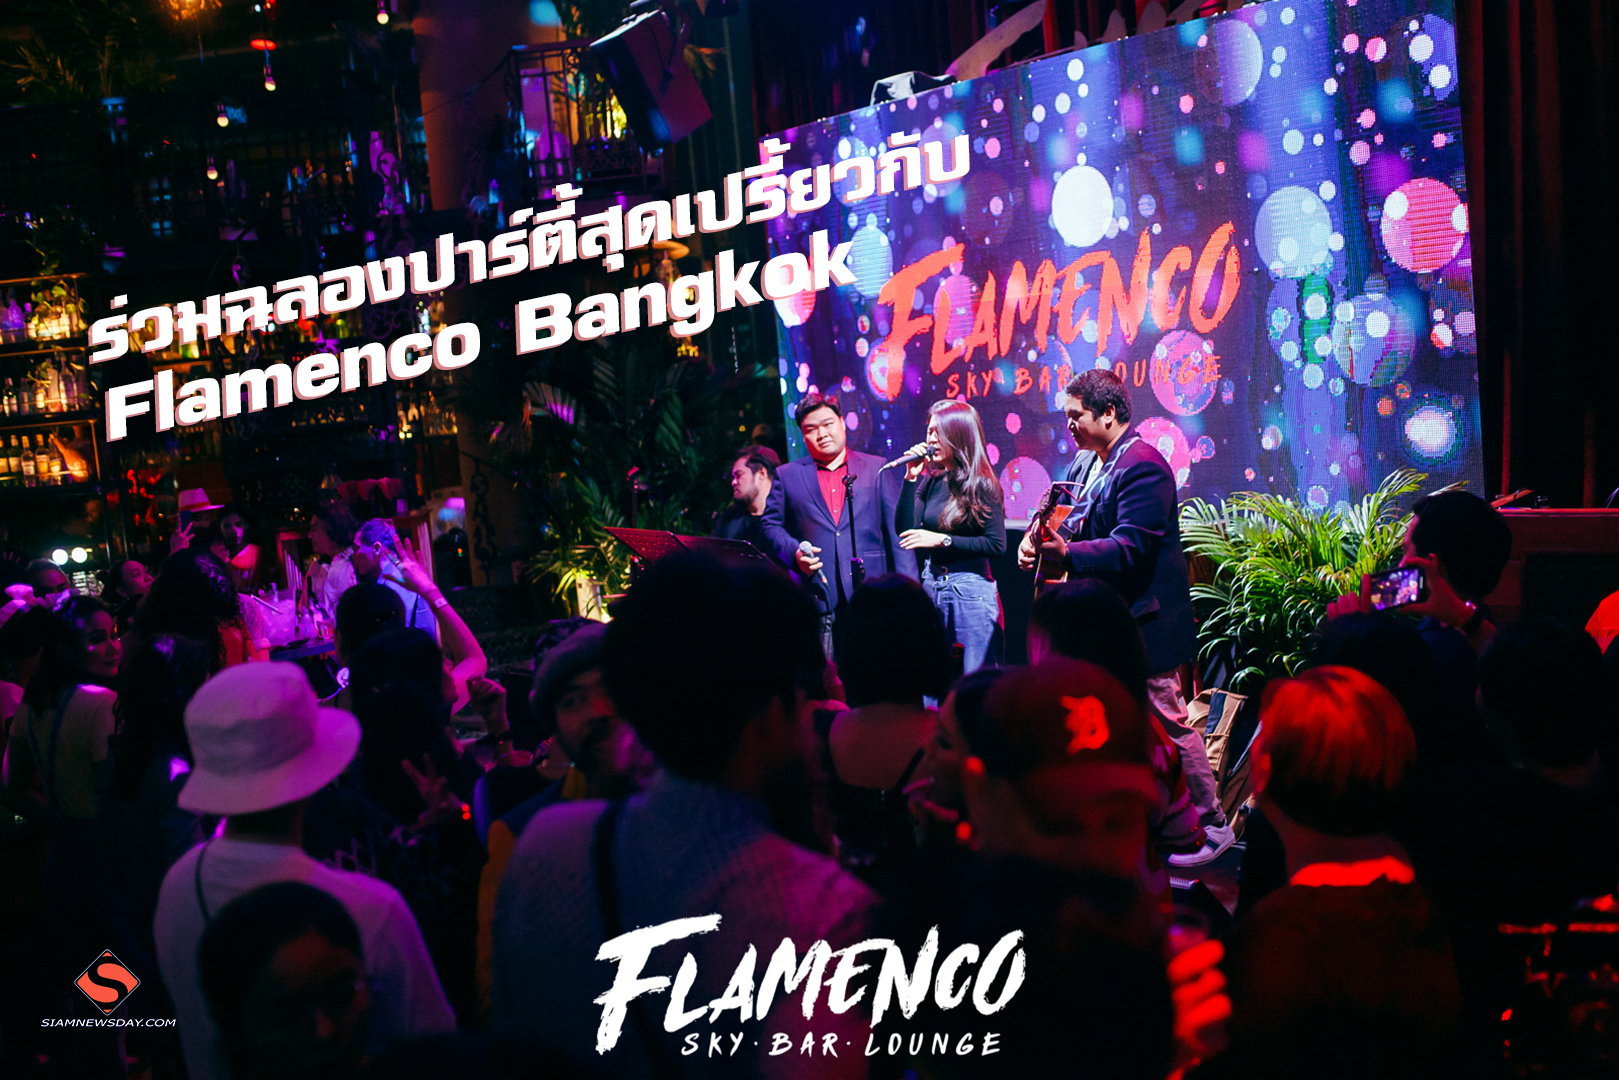 ร่วมฉลองปาร์ตี้สุดเปรี้ยวกับ Flamenco Bangkok